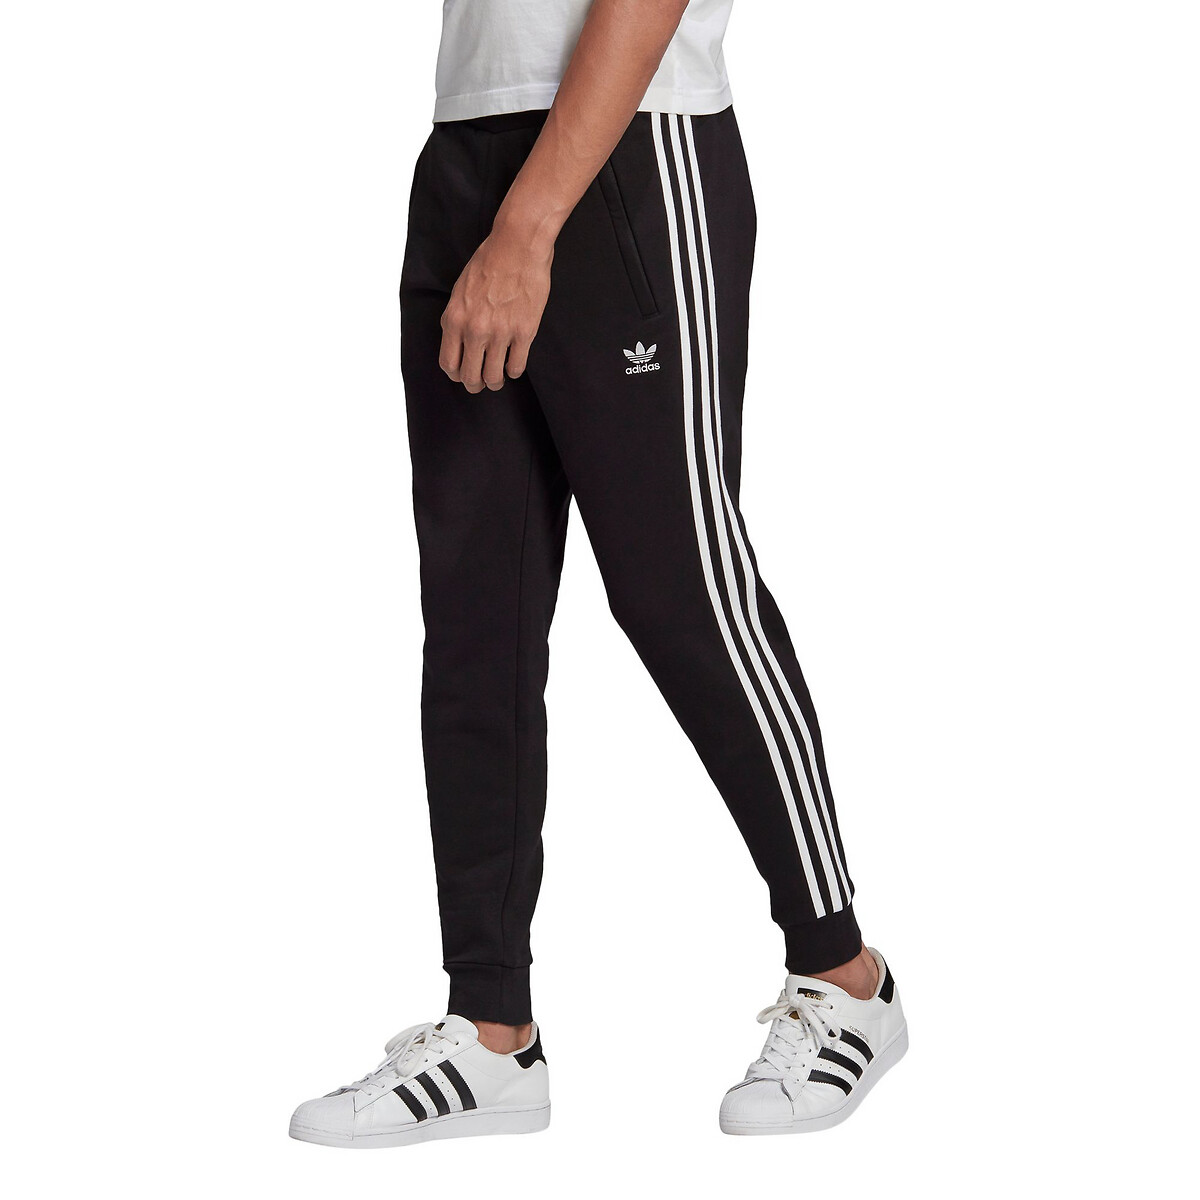 Zelfrespect Sada Potentieel Broek, klein trefoil logo 3 lijnen zwart Adidas Originals | La Redoute